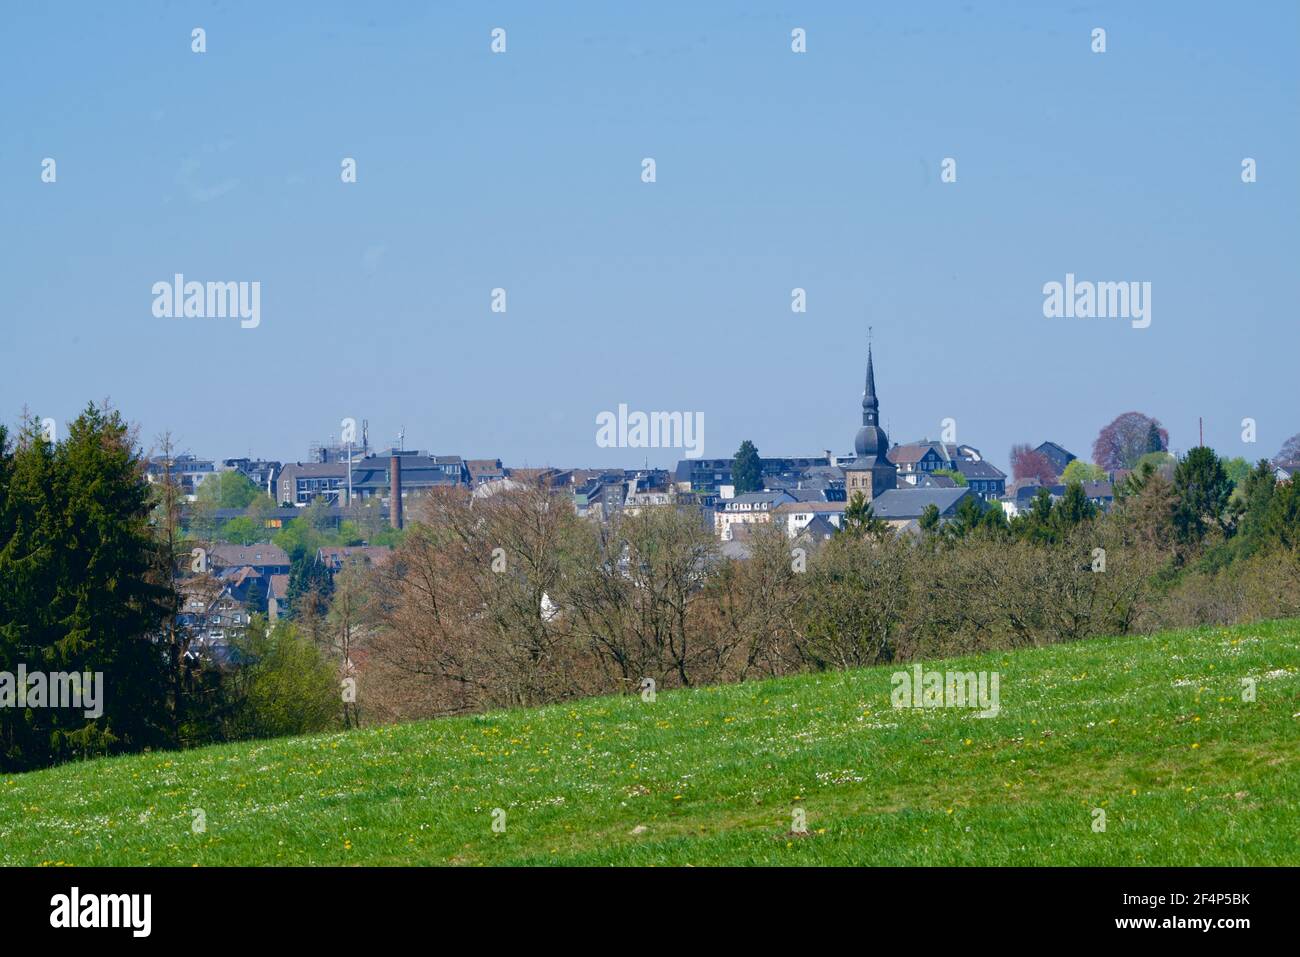 Skyline of Wermelskirchen under a blue sky Stock Photo